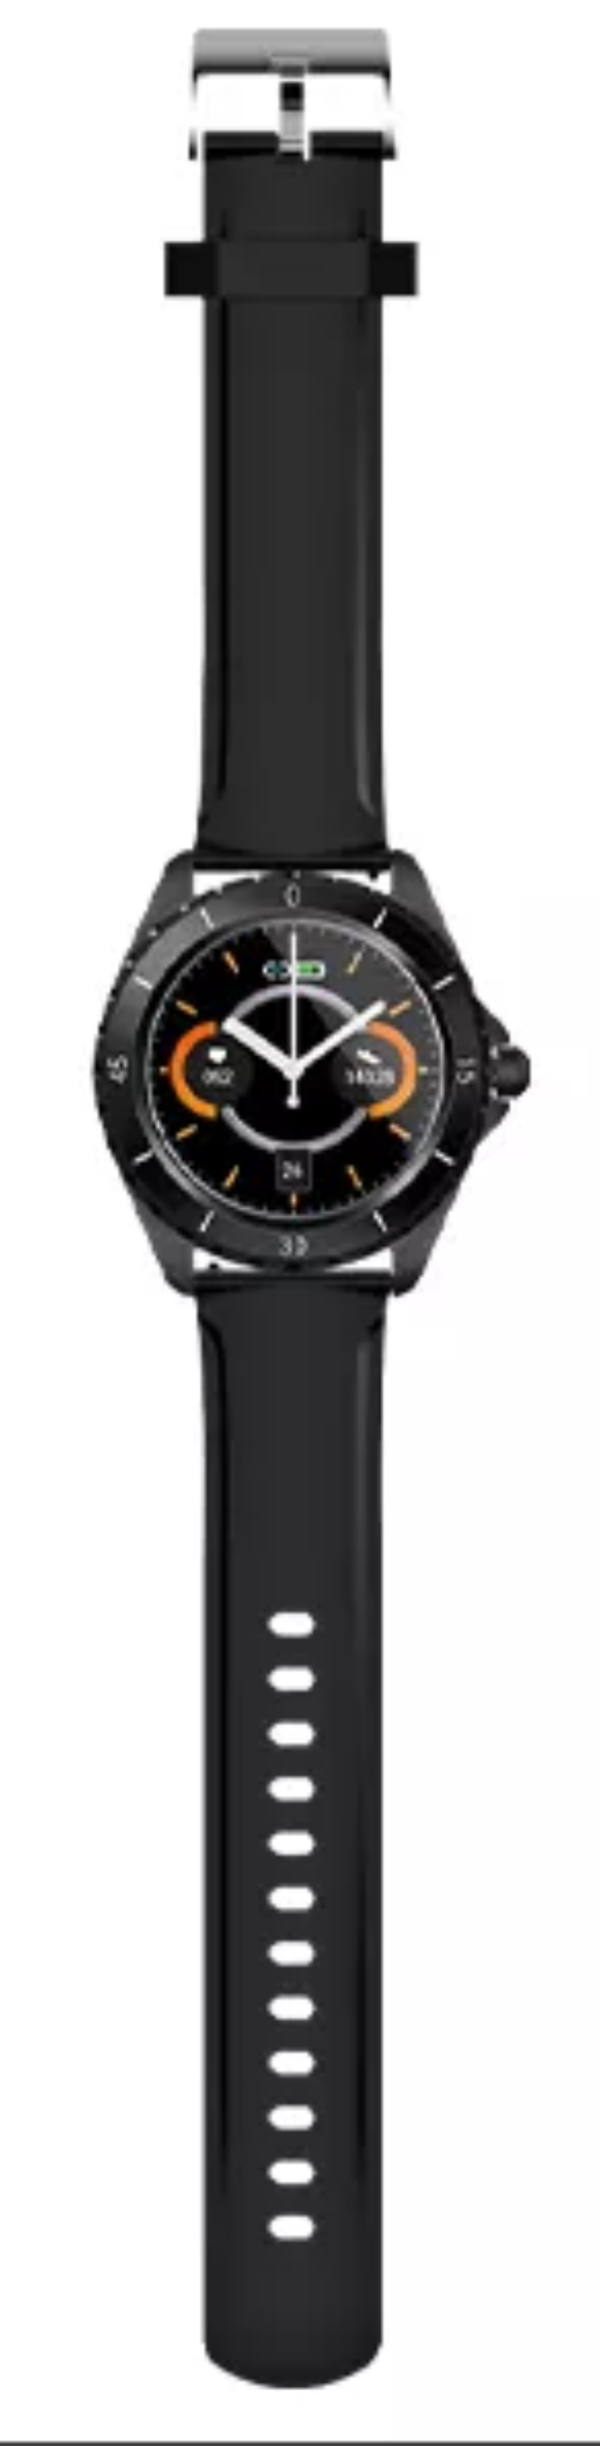 Смарт часы BQ watch 1.0. Часы bq2425. BQ watch 1.0 Black. Смарт-часы BQ watch 1.1 чёрный. Часы bq watch